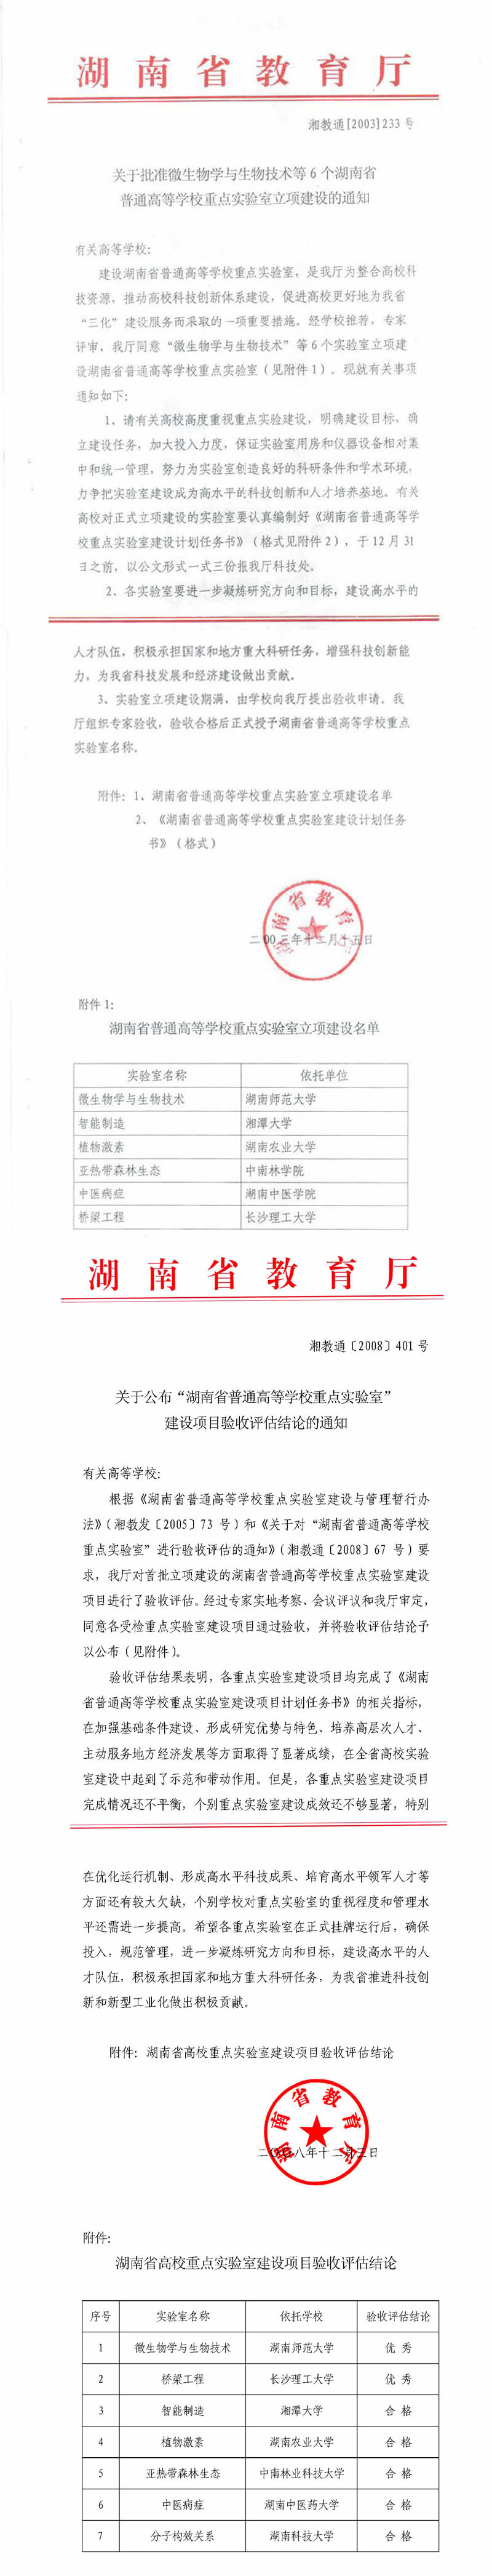 湖南省高校重点实验室－智能制造-5_页面.jpg